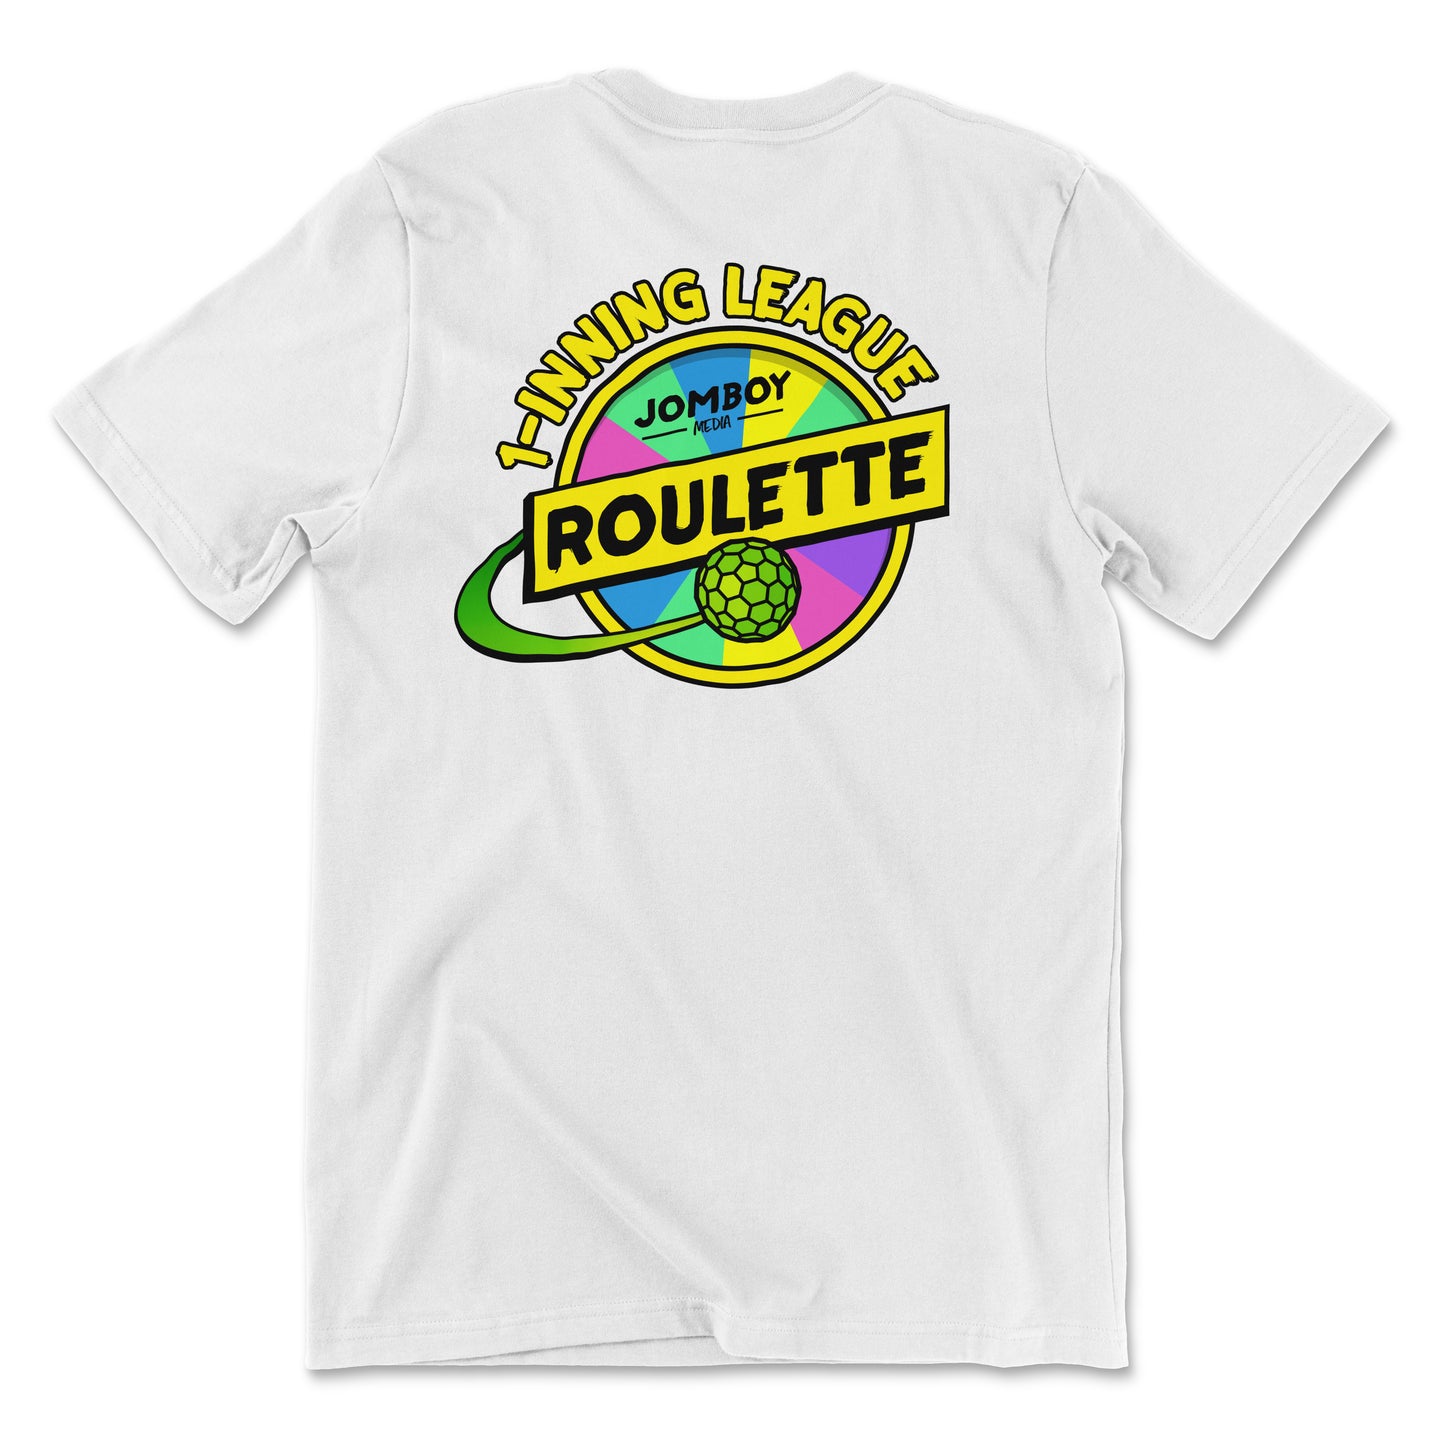 Team Jomboy 1-Inning League Roulette | T-Shirt